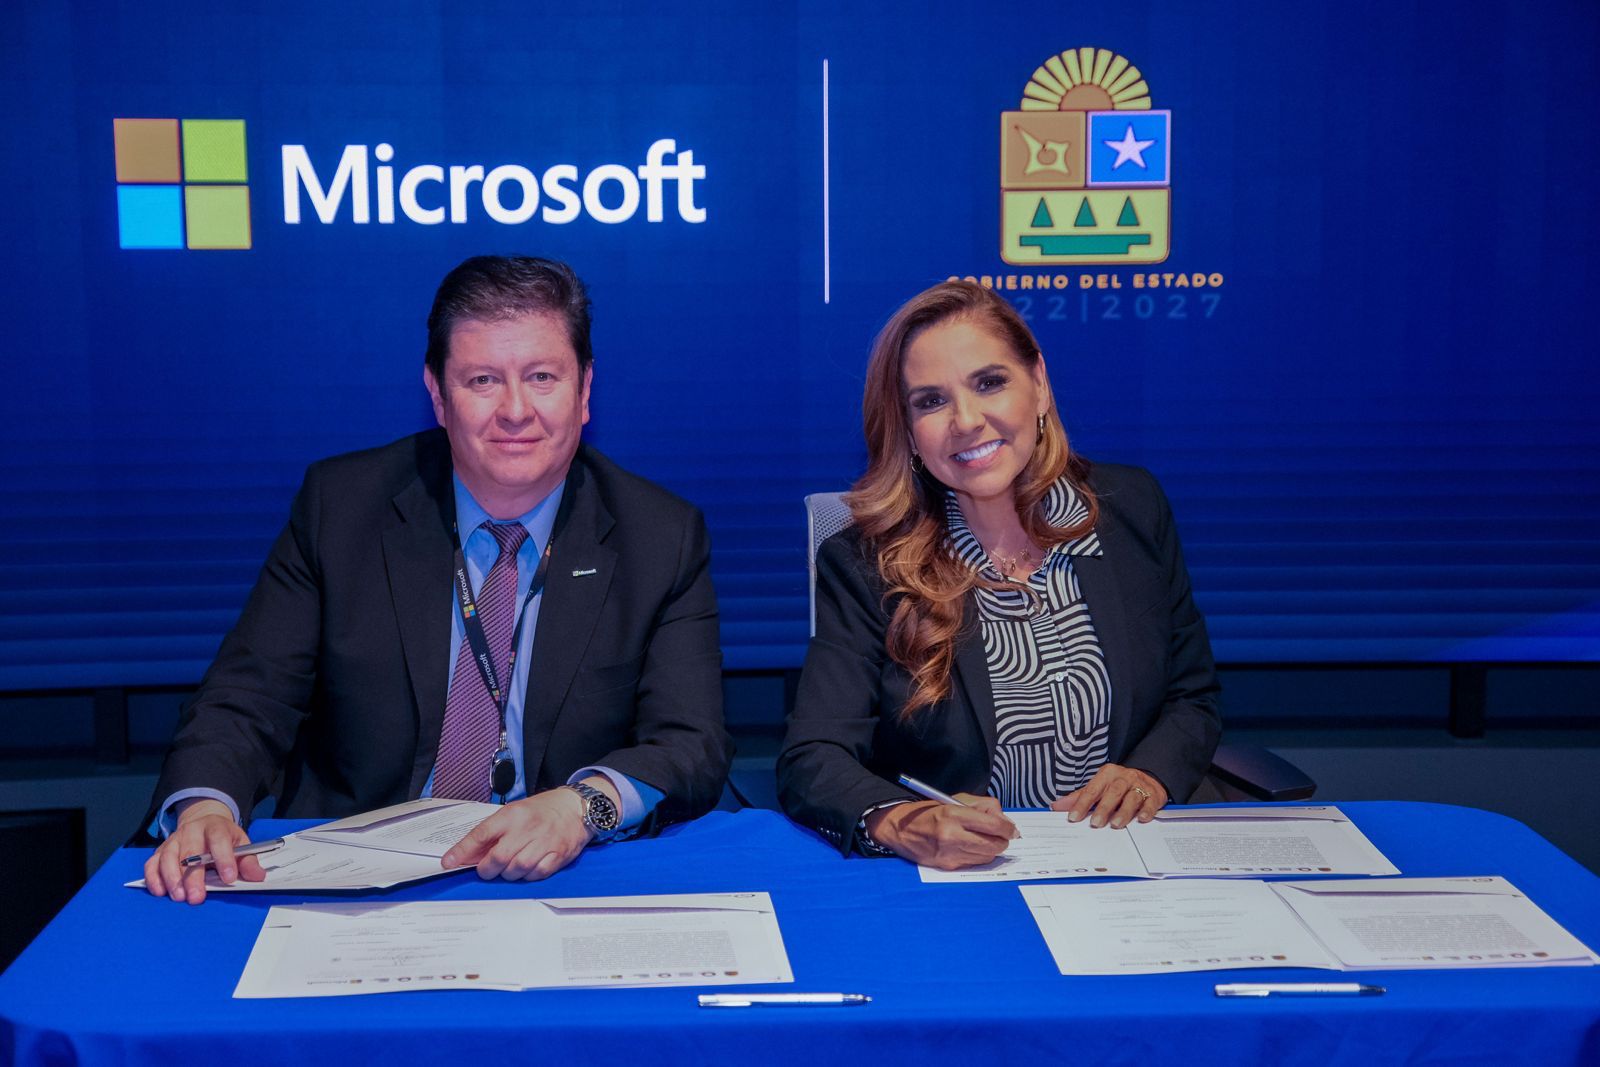 Mara Lezama y Microsoft unen esfuerzos para impulsar la inclusión digital en Quintana Roo